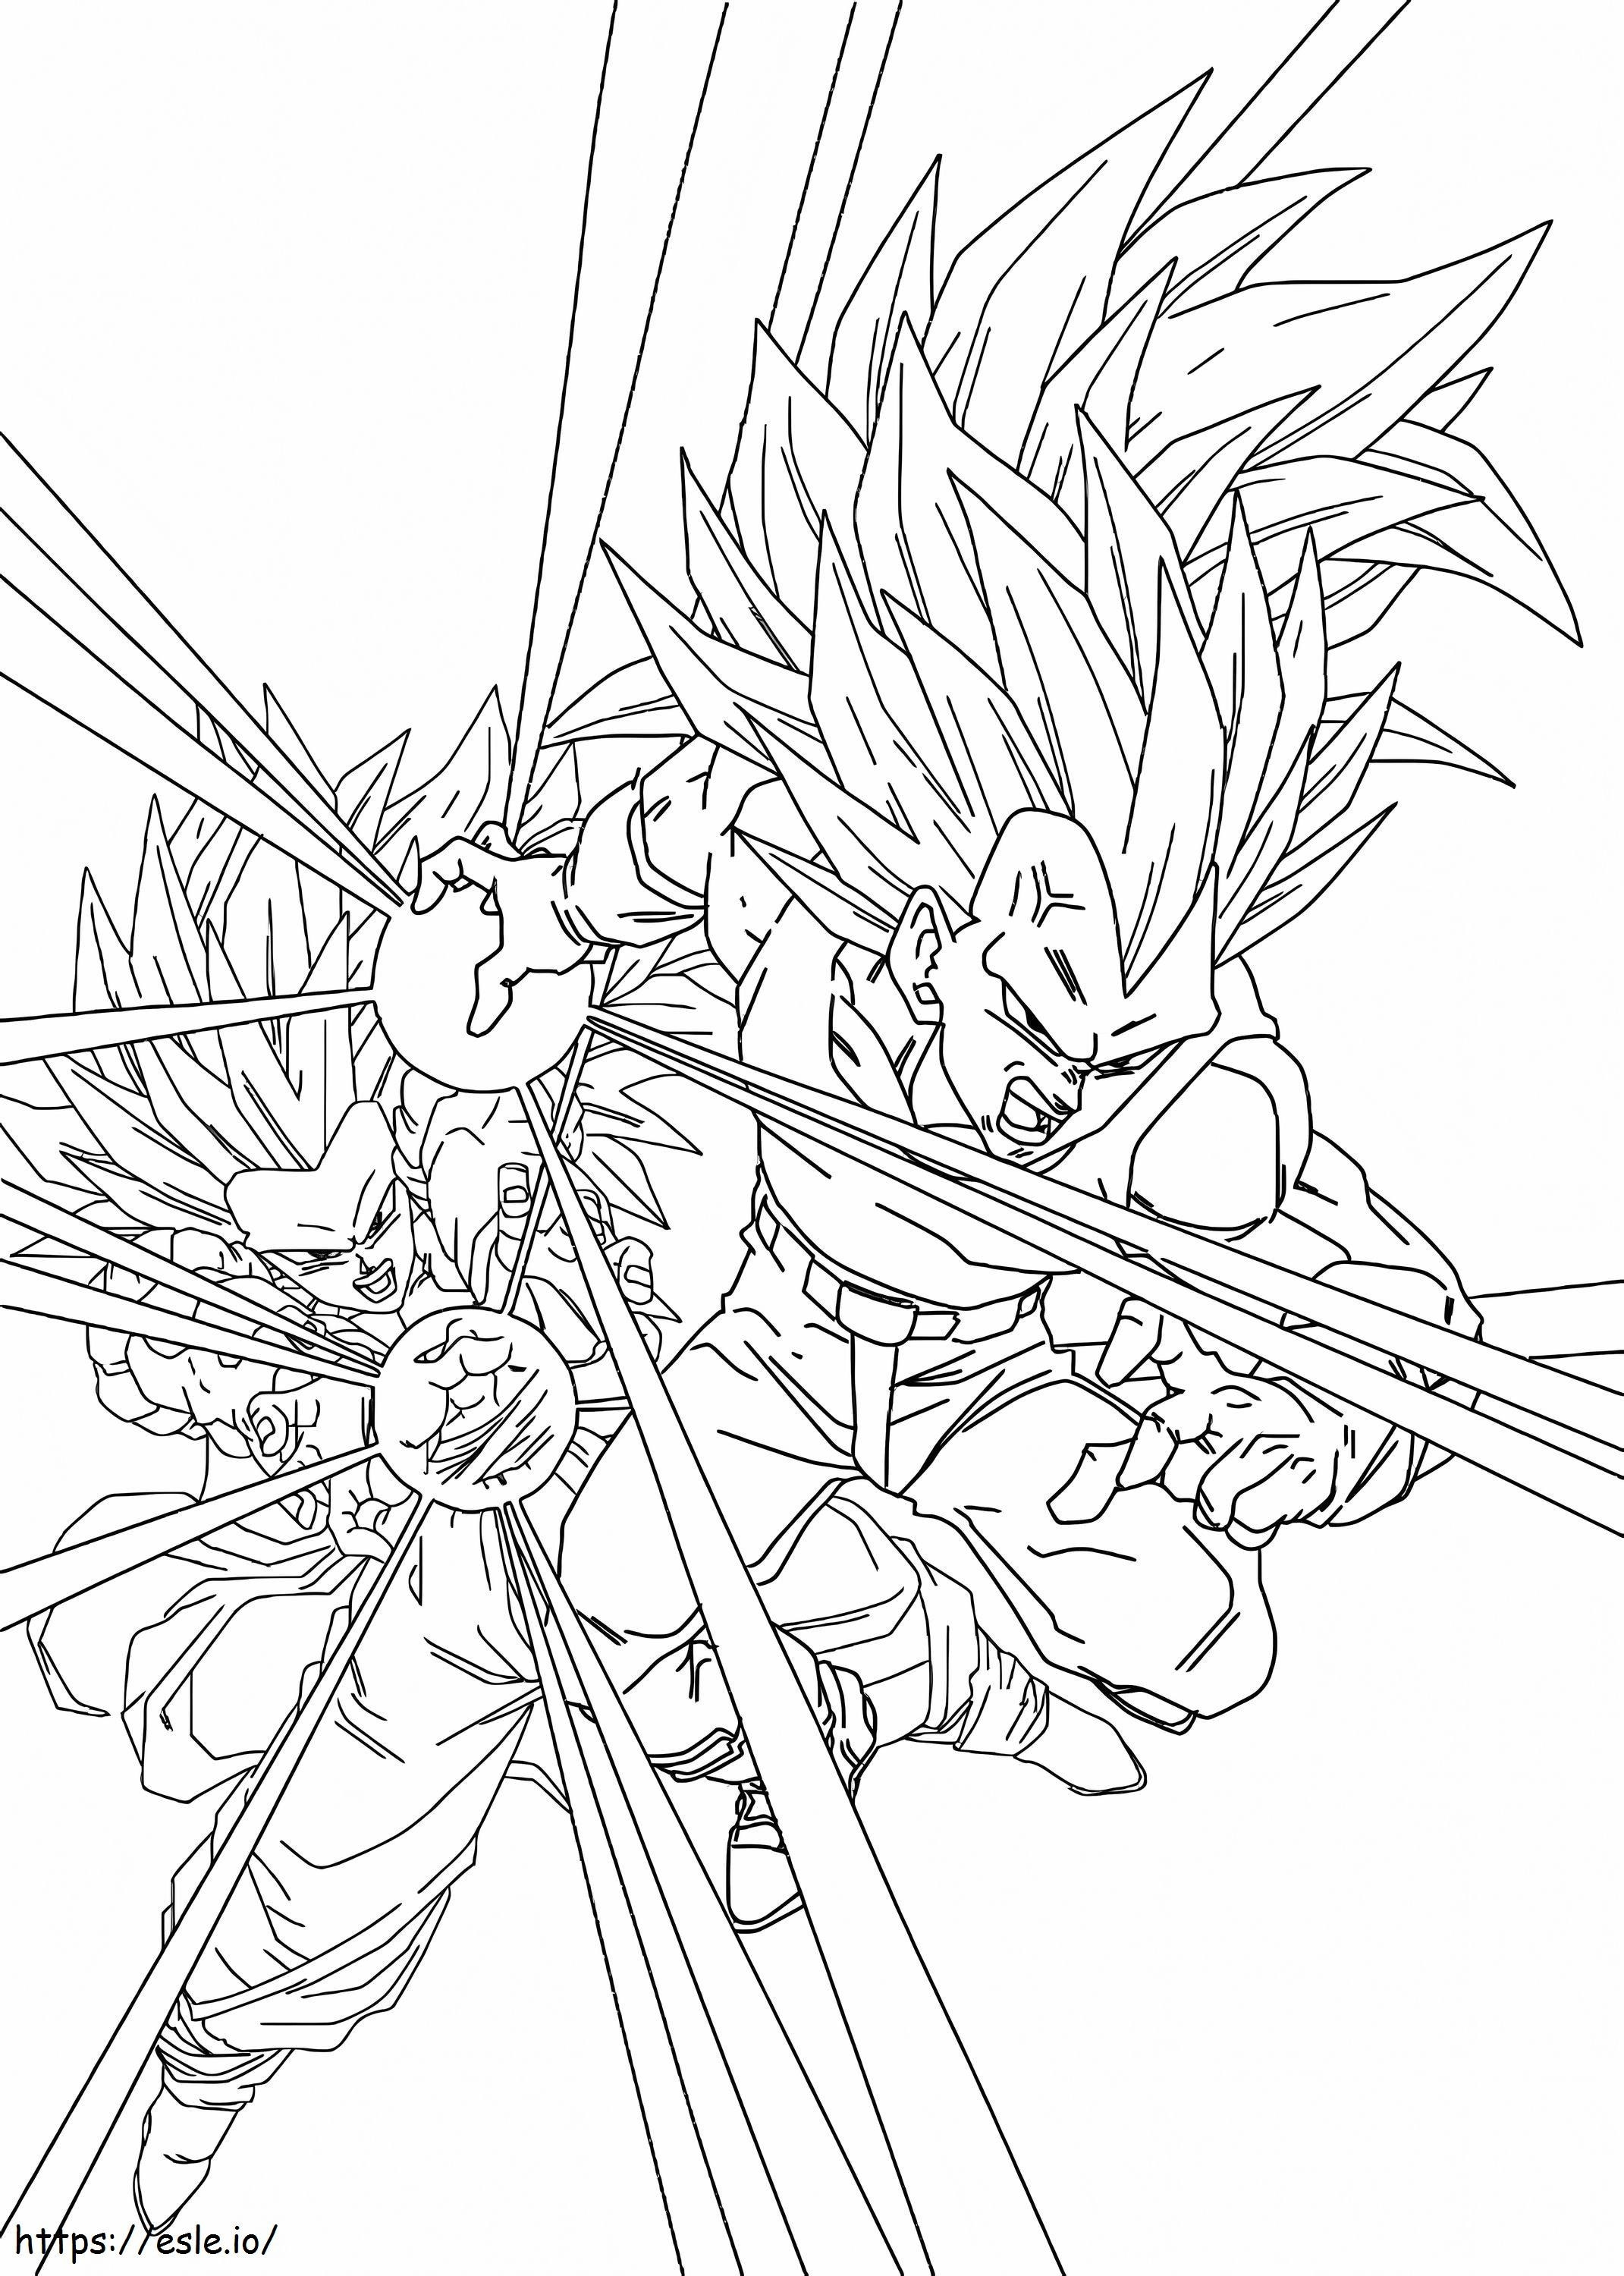 Coloriage Vegeta et Son Goku Super Saiyajin 3 à imprimer dessin